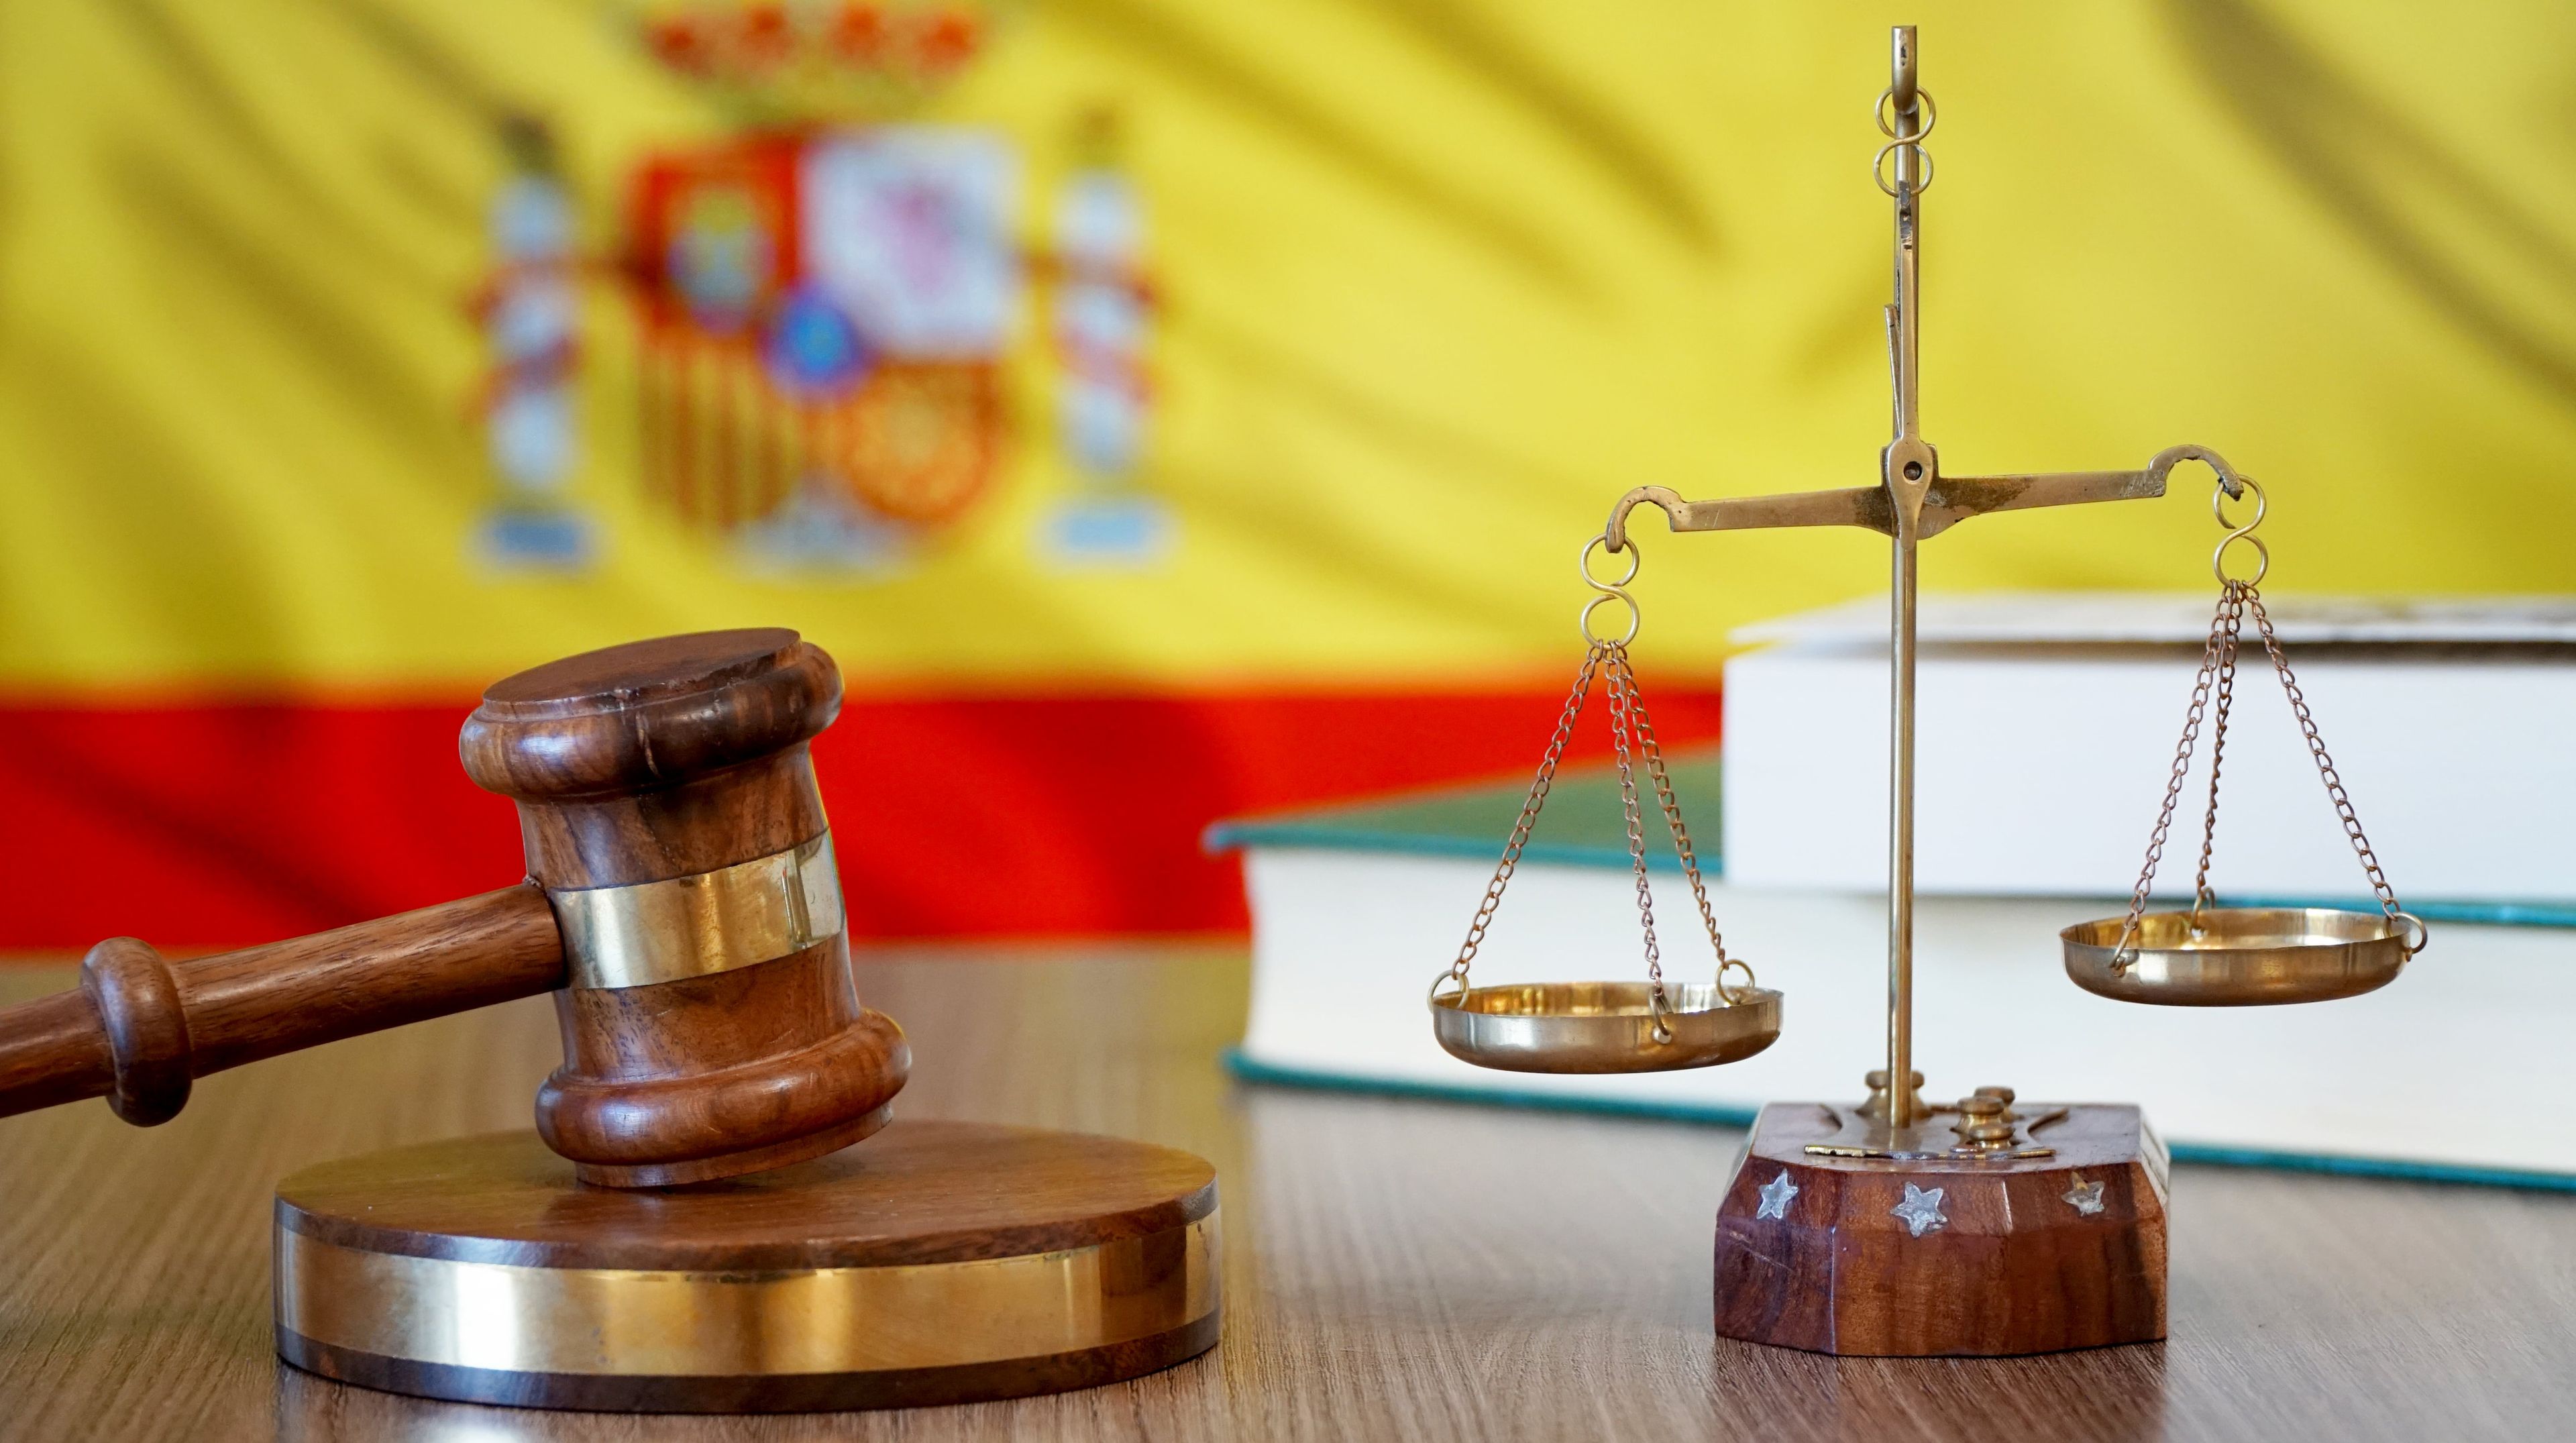 Justicia española